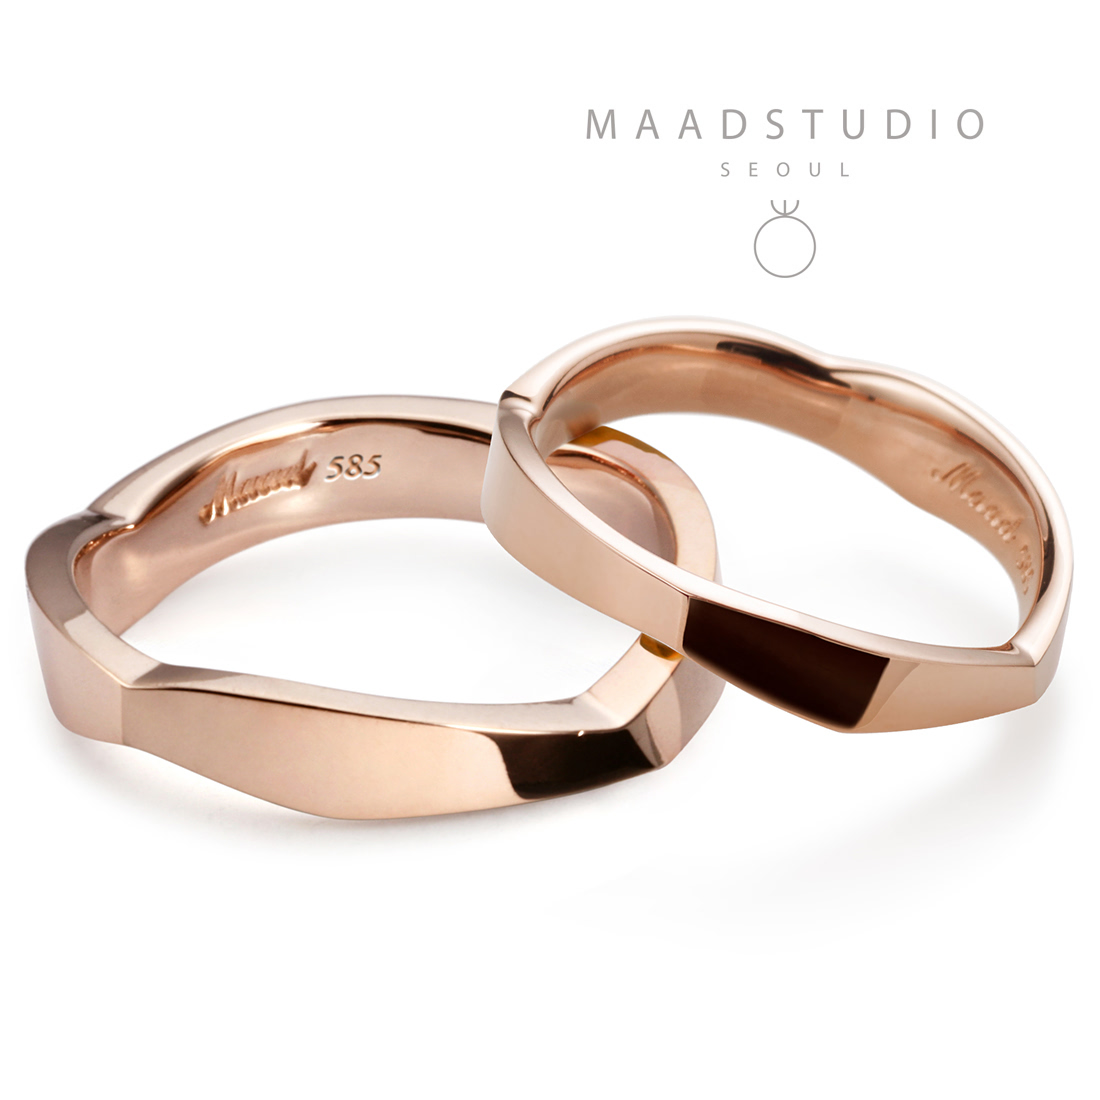 Twig wedding ring Set (M&S) 14k Red gold